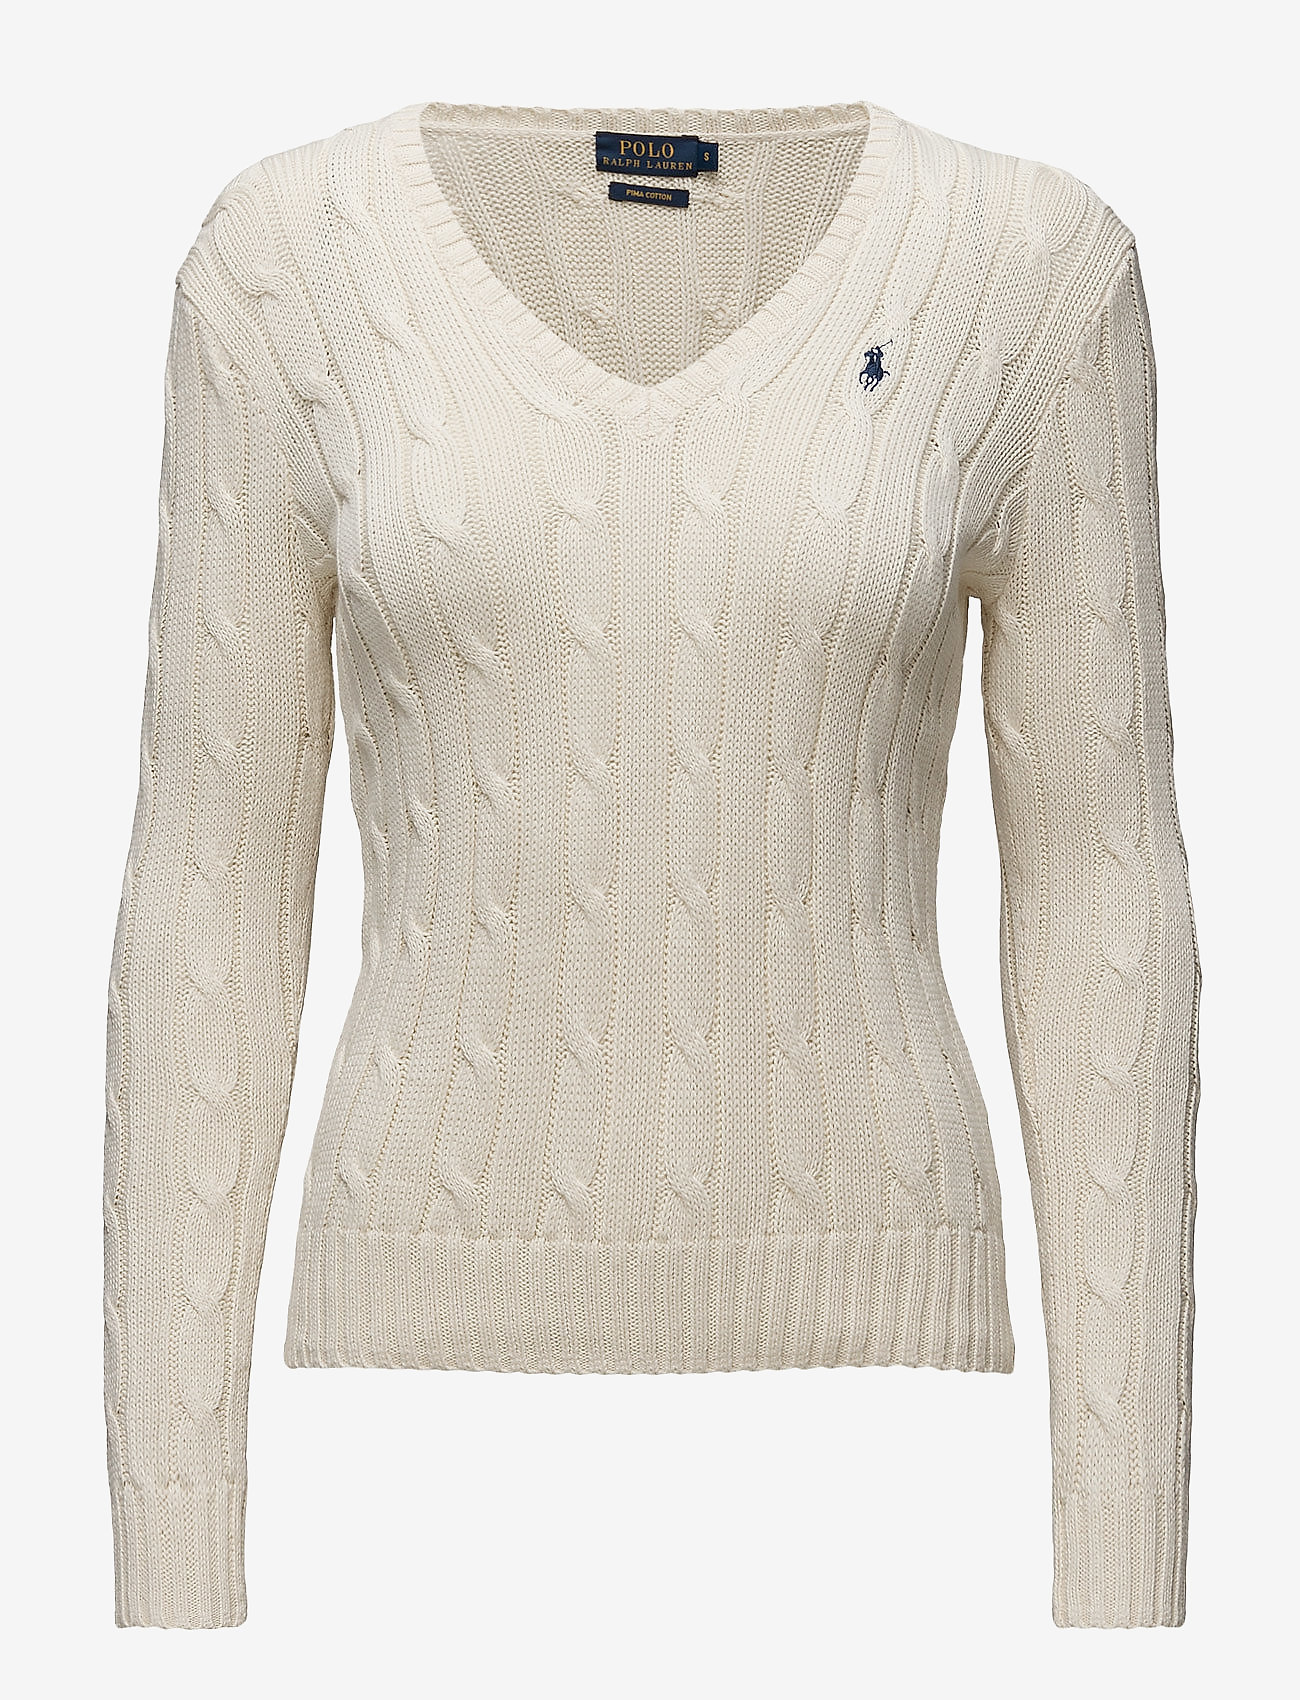 Polo Ralph Lauren Cableknit Vneck Sweater (Cream) 1295 kr